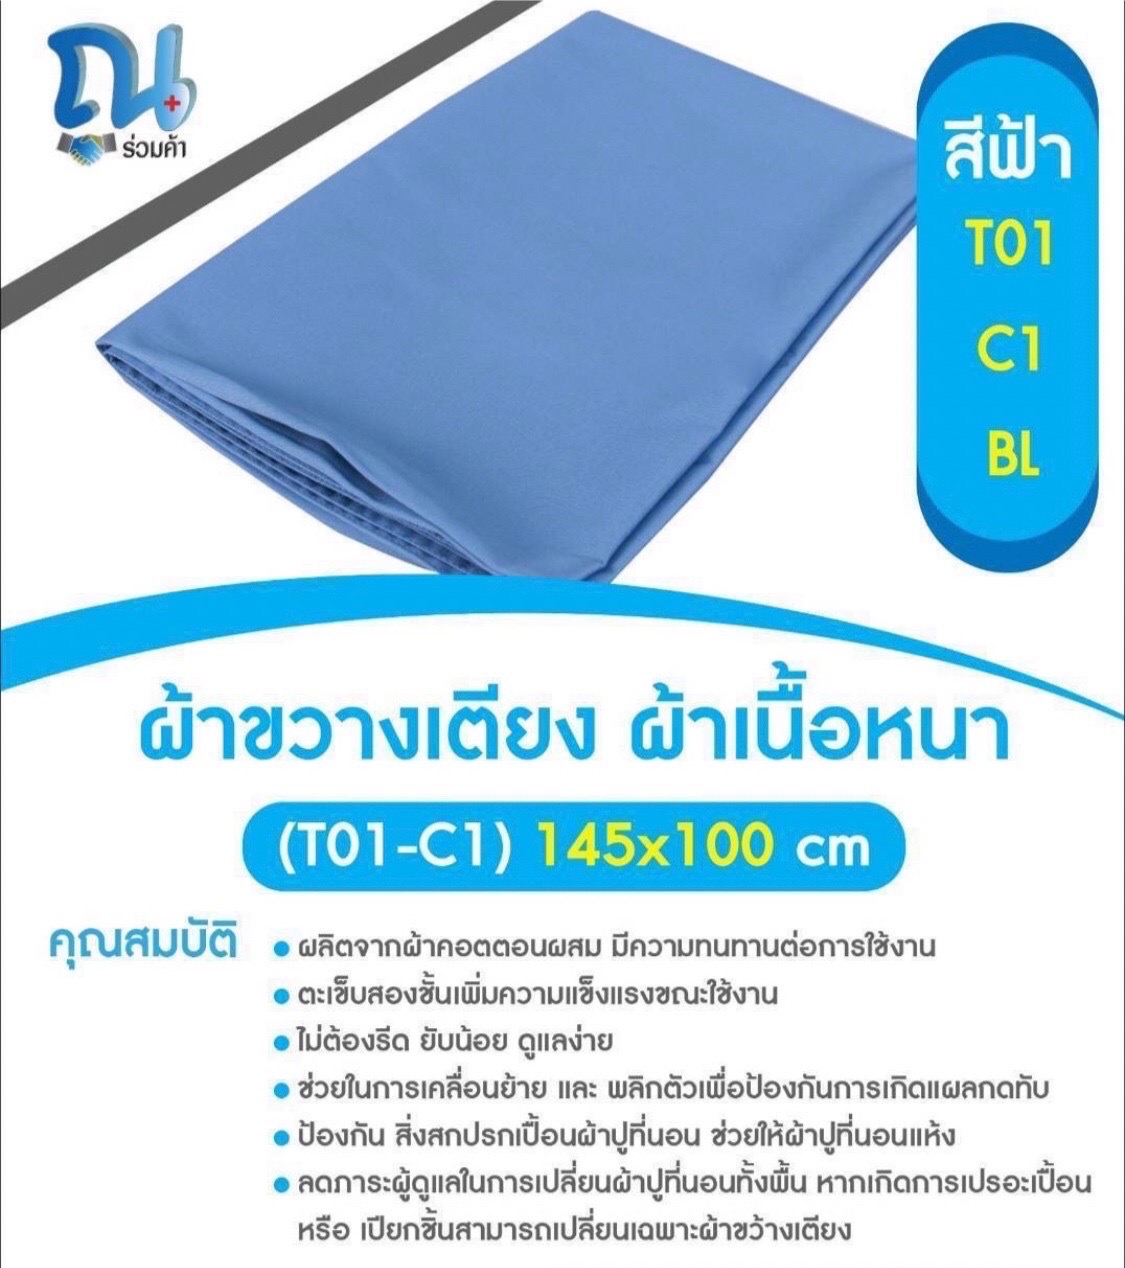 ผ้าขวางเตียงผู้ป่วย รุ่น T01-E1-BL SIZE 145X100CM สีฟ้า